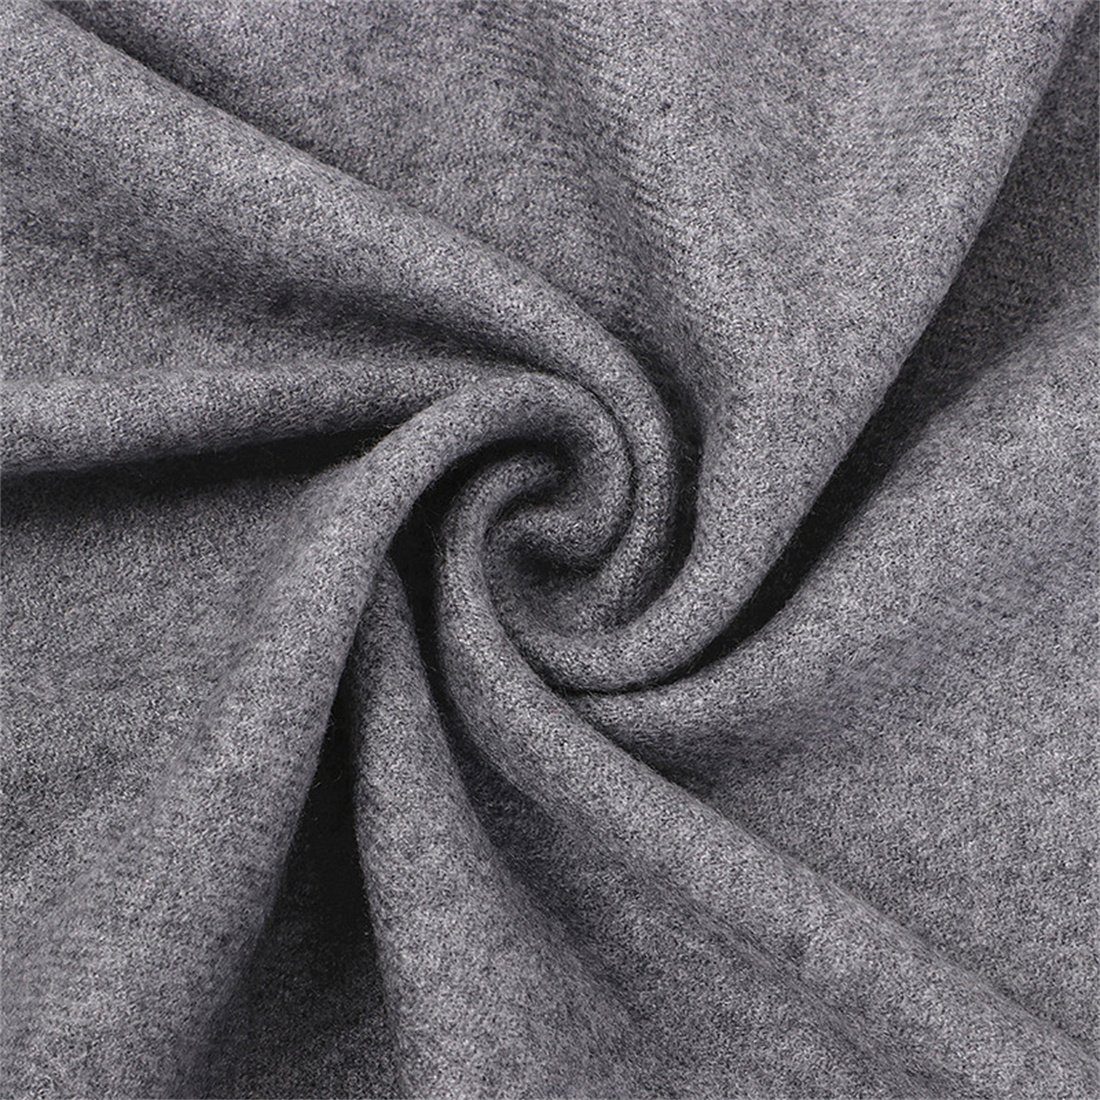 DÖRÖY Grau Mode Schal Modeschal Frauen Männer solide Farbe Winter Schal, Schal